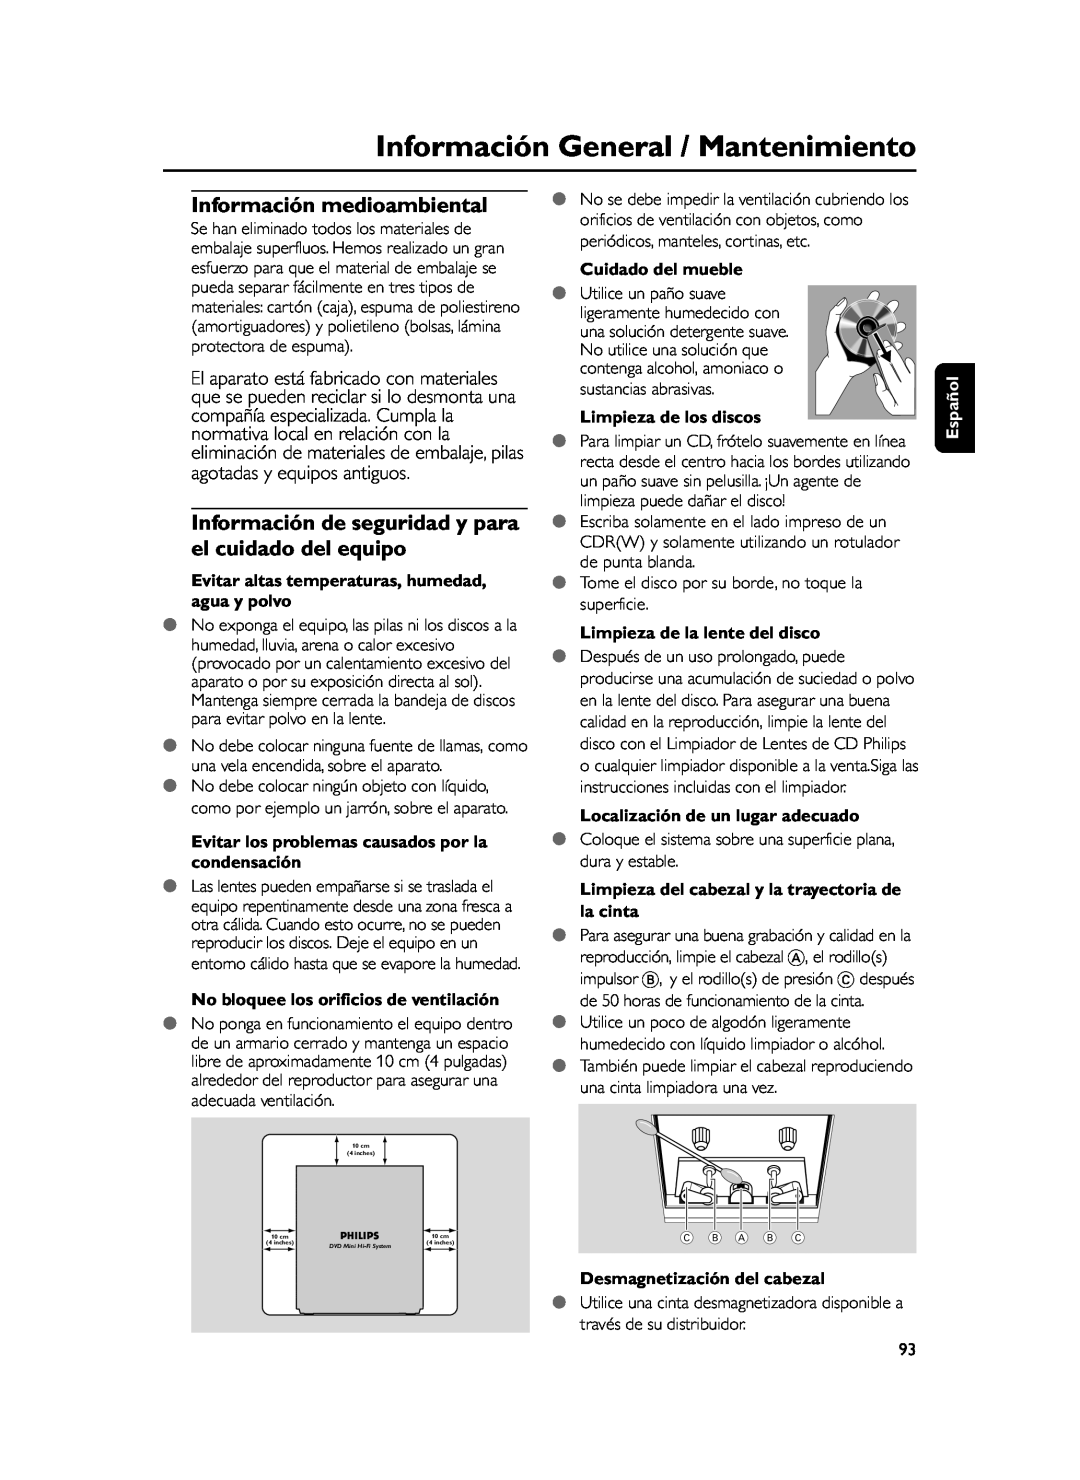 Philips FWD39 Información medioambiental, Evitar altas temperaturas, humedad, agua y polvo, Cuidado del mueble, Español 